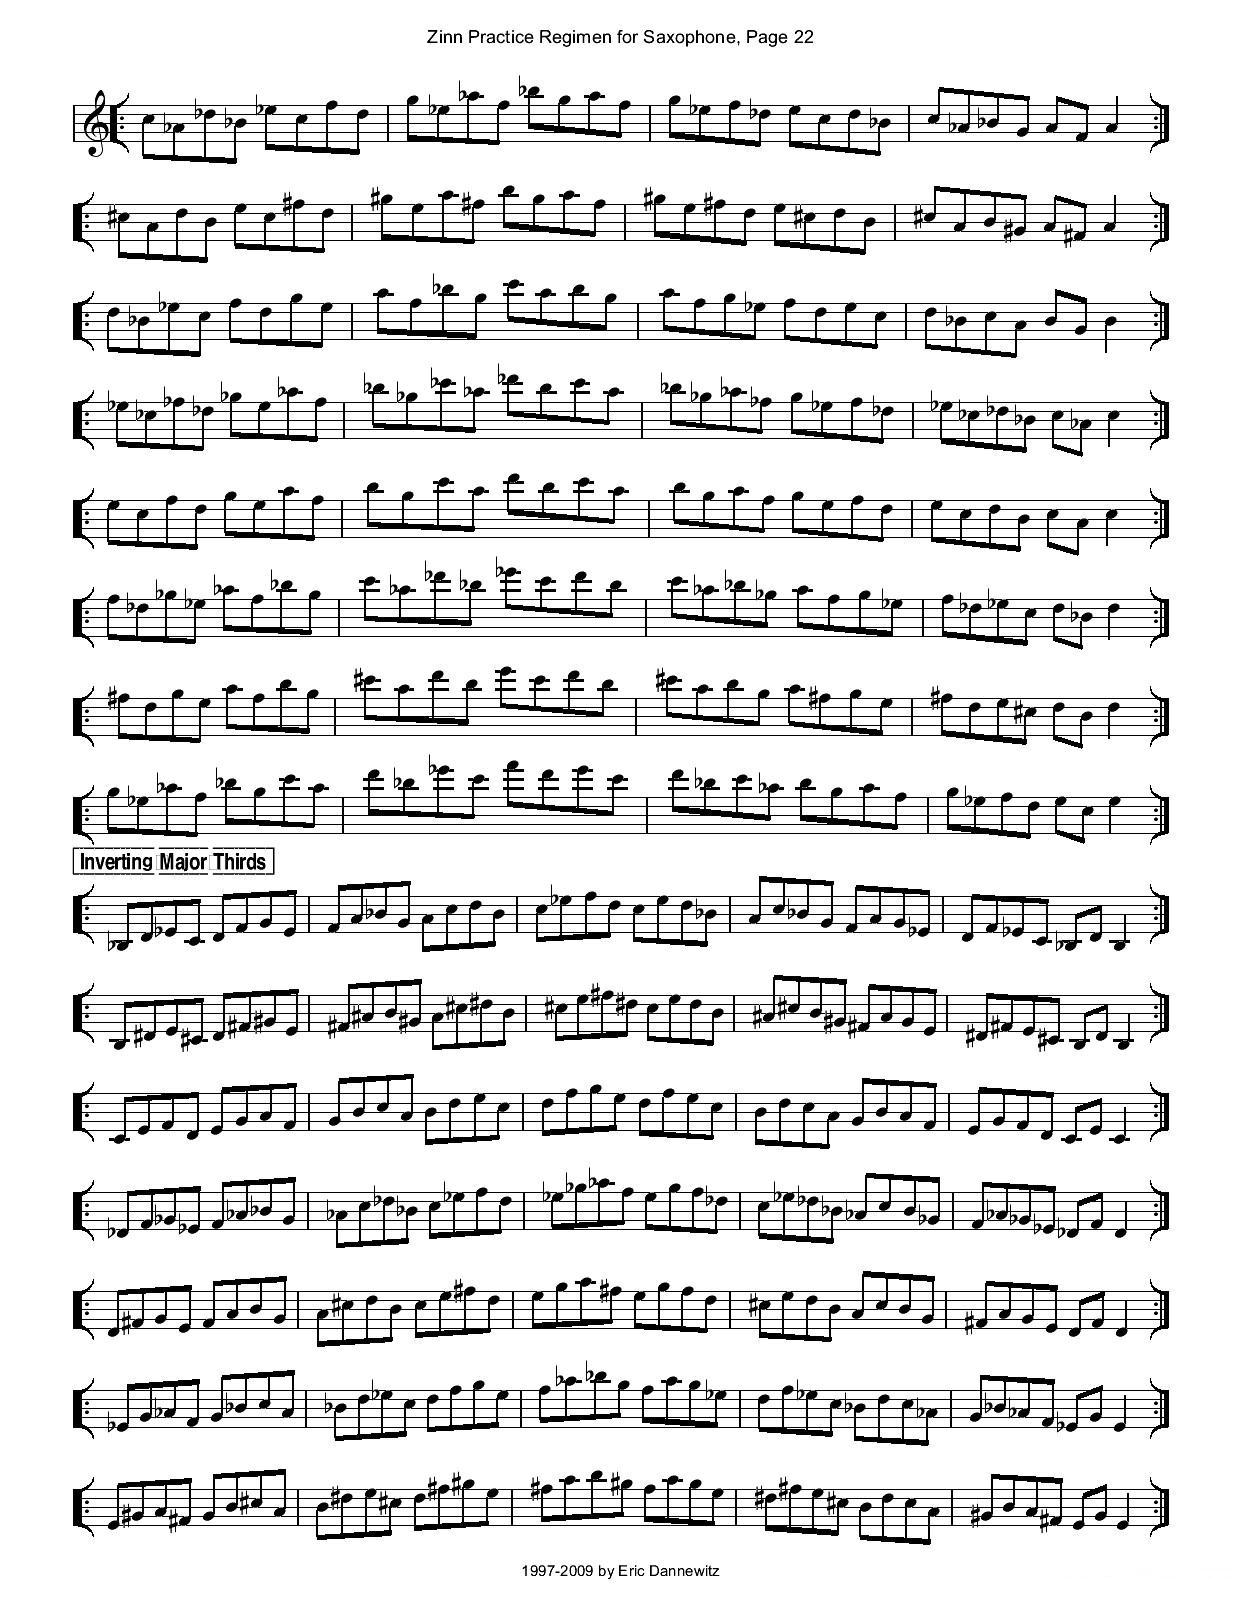 ZinnRegimenSax2009练习曲萨克斯曲谱（图25）